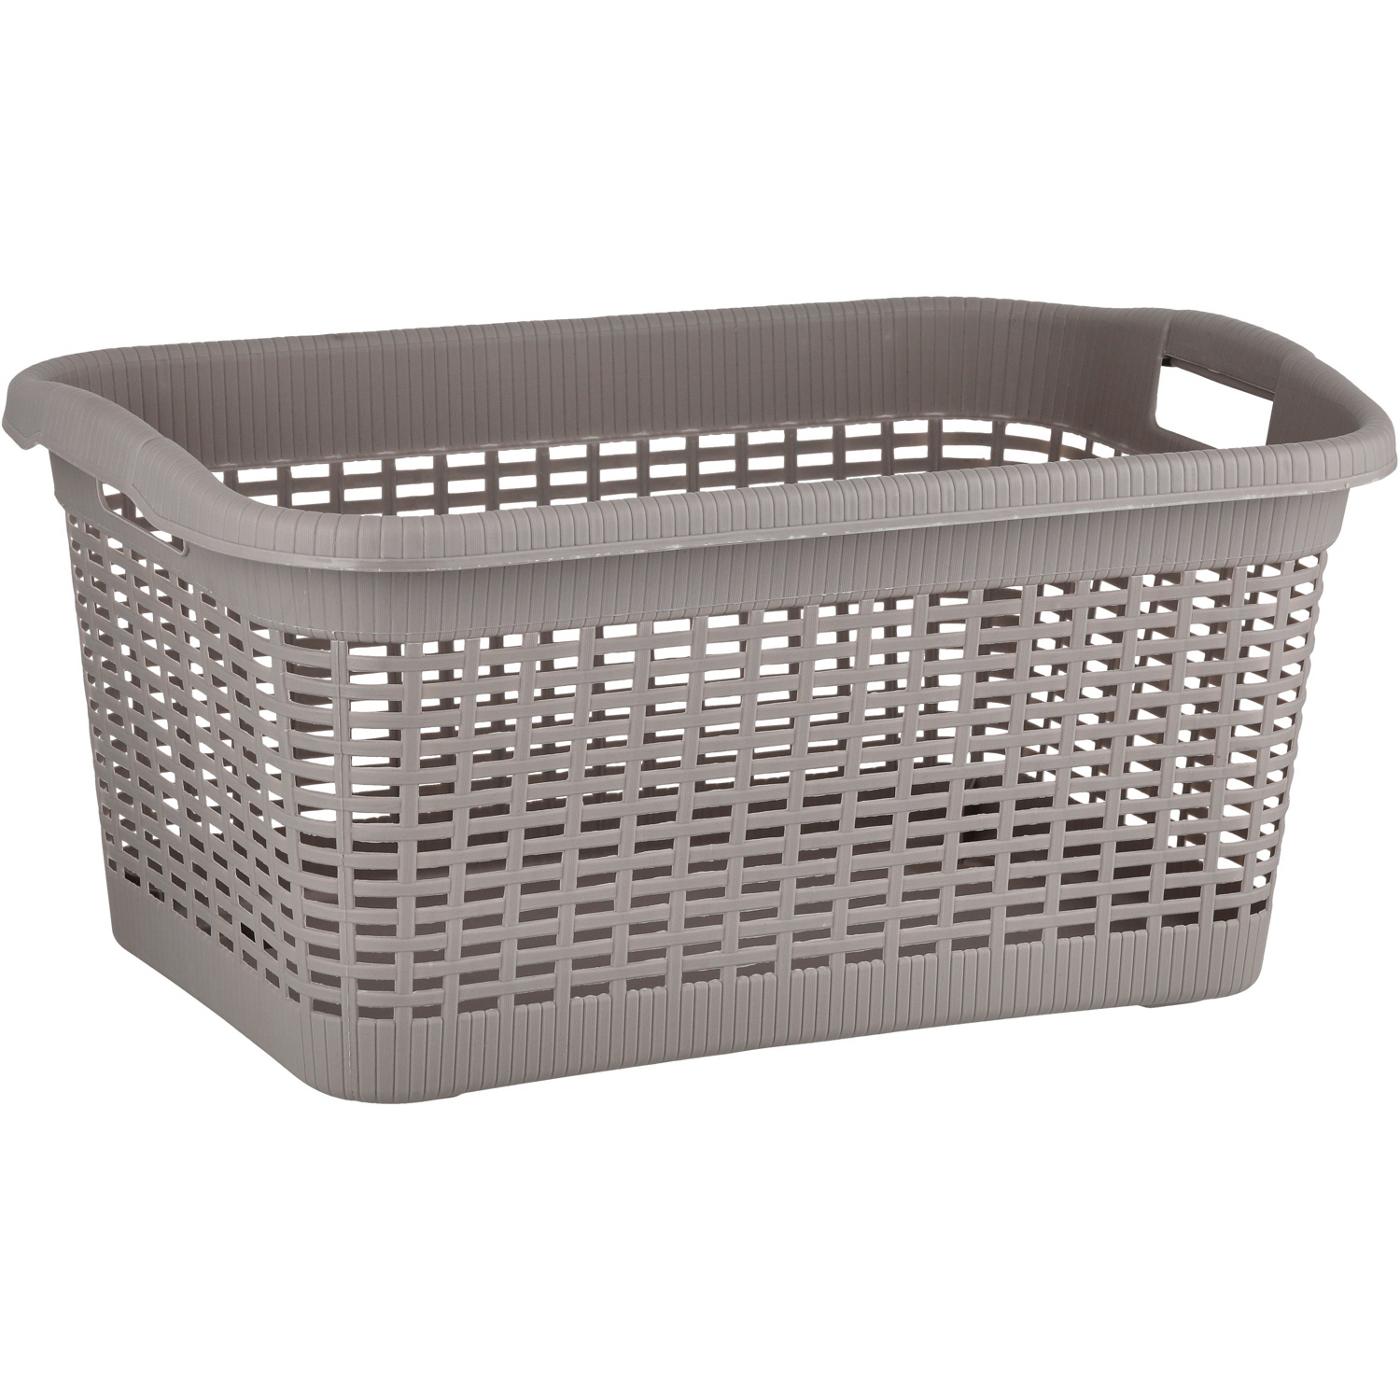 Destination Holiday Laundry Basket - Grey; image 1 of 4